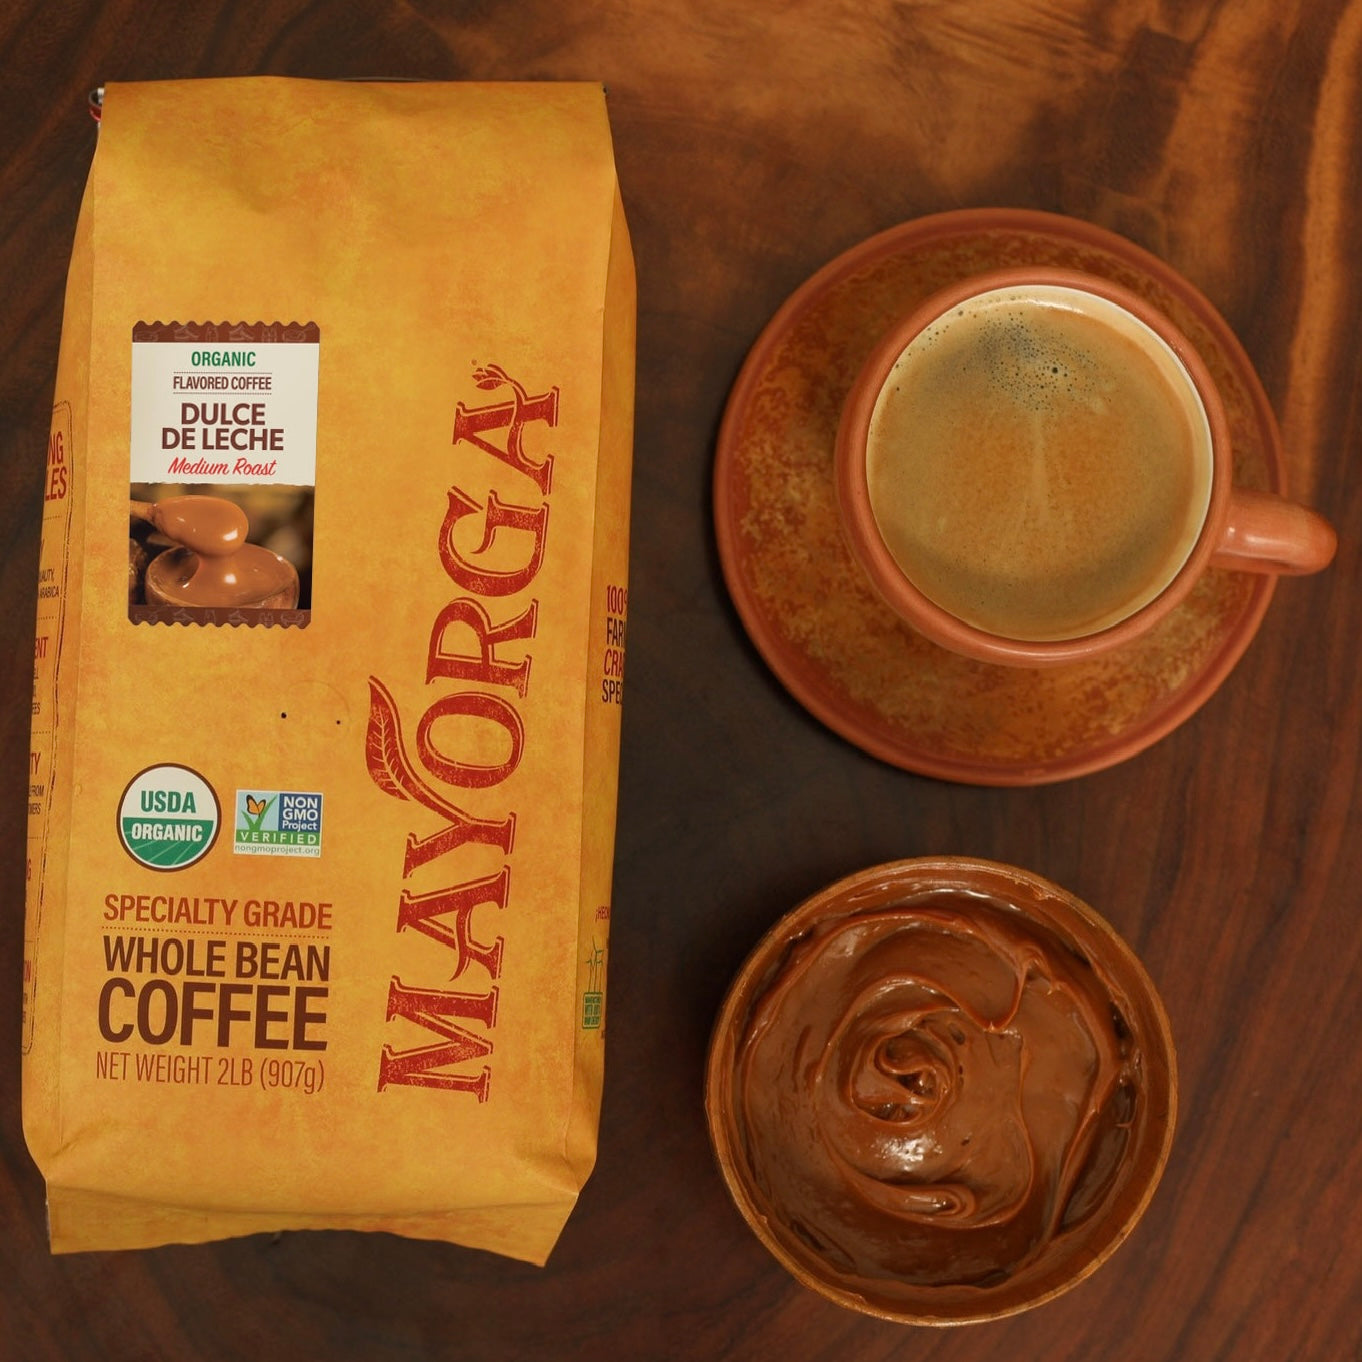 Mayorga Coffee